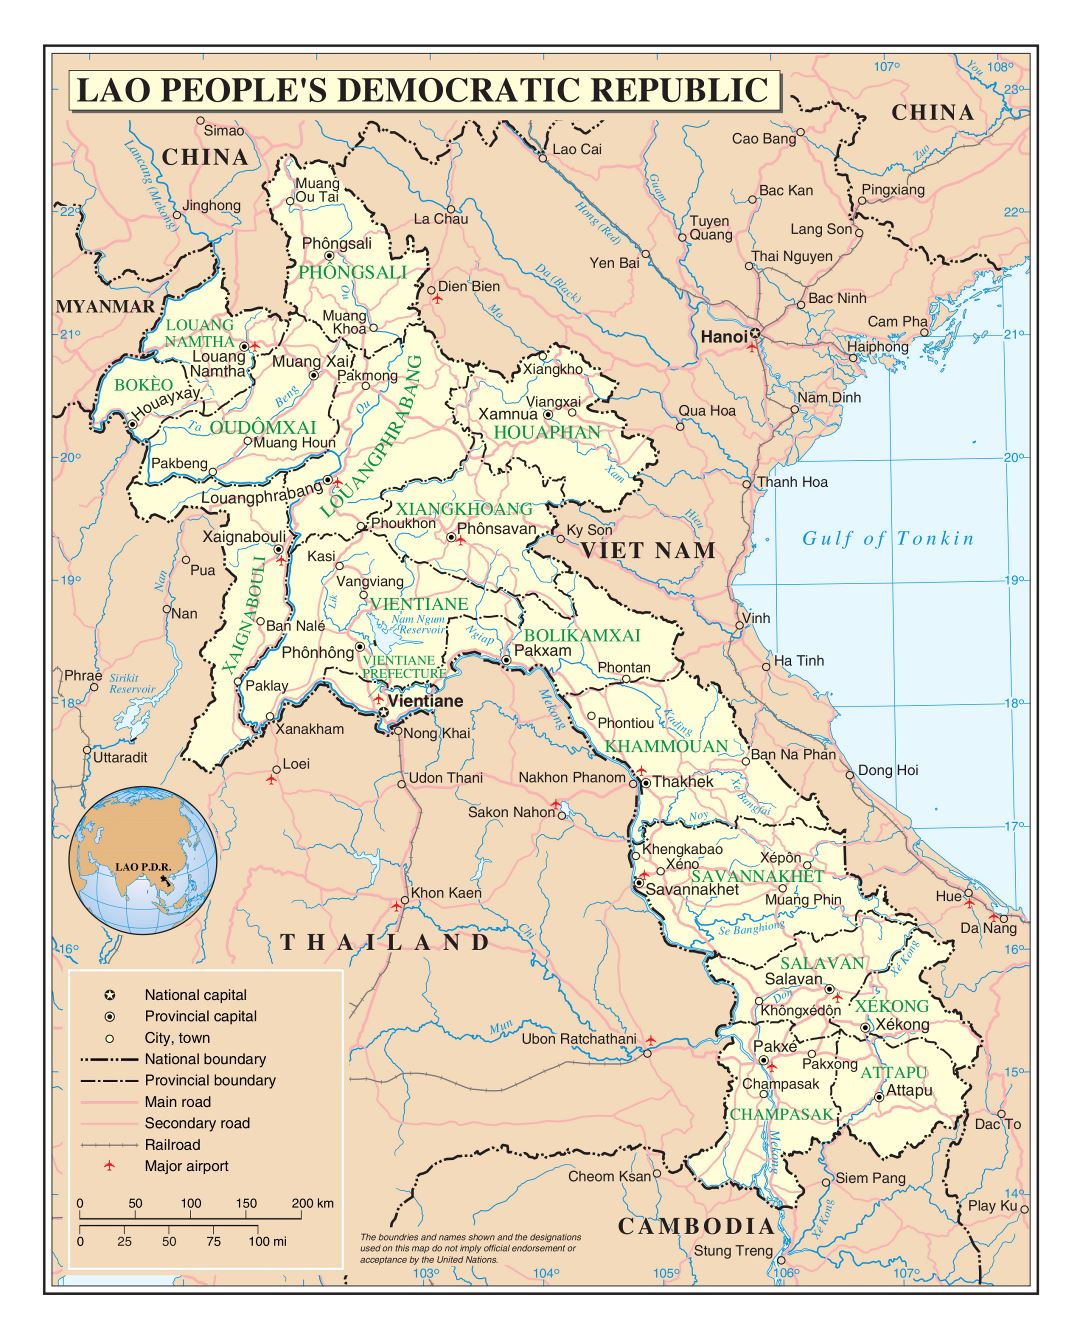 Большая детальная политическая и административная карта Лаоса с дорогами, железными дорогами, городами и аэропортами